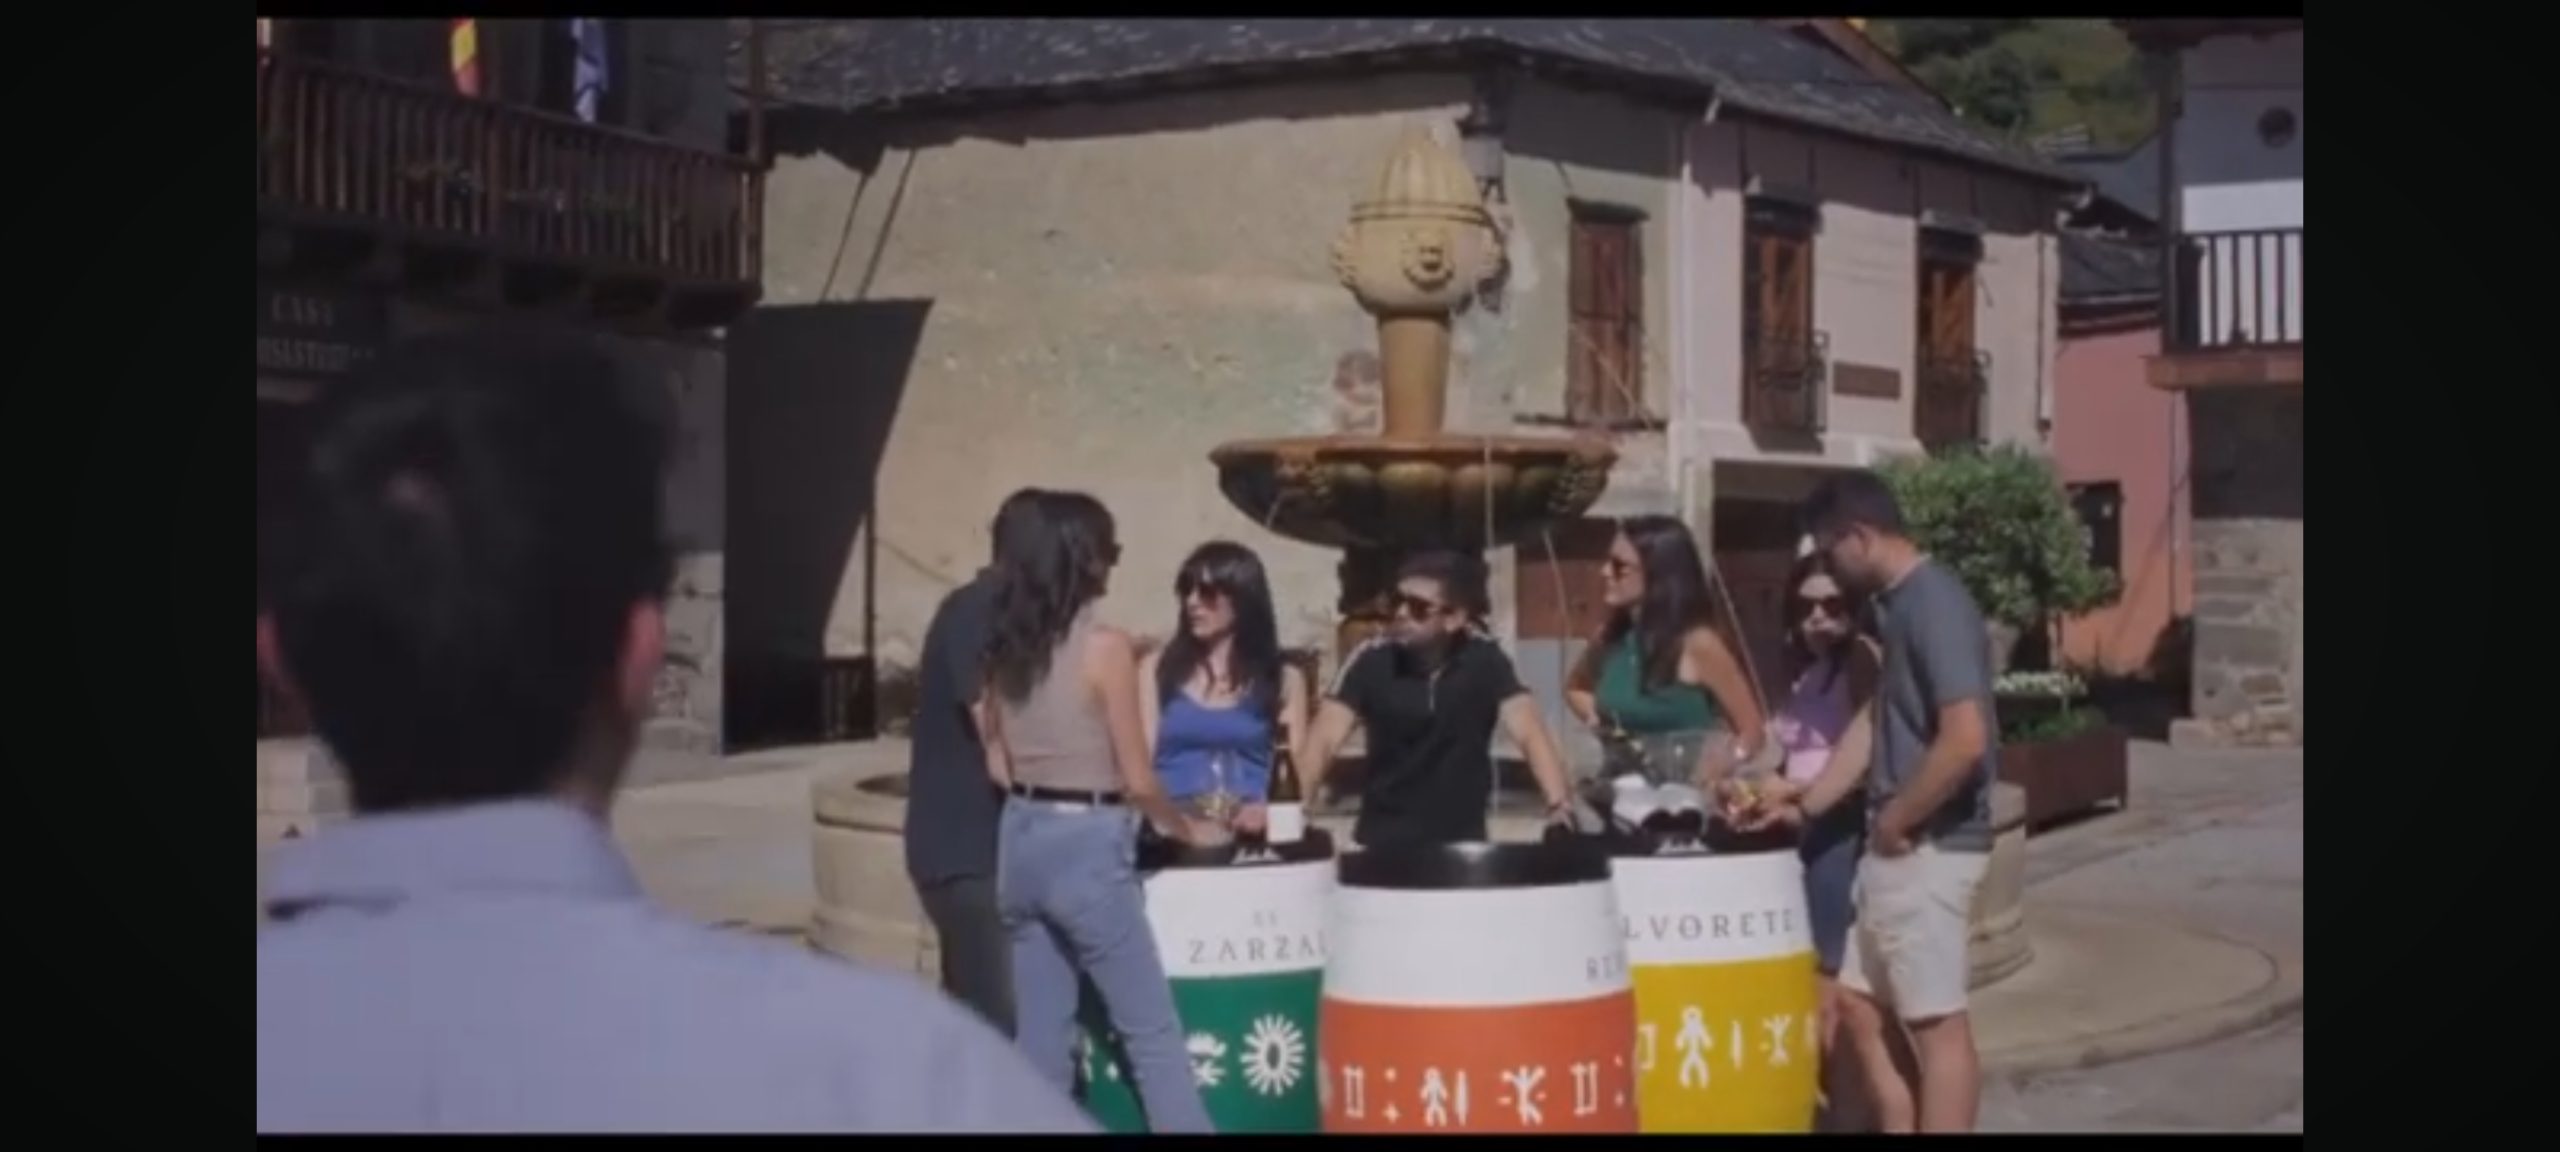 El vídeo con el que Emilio Moro quiere que este verano se brinde con godello del Bierzo 2